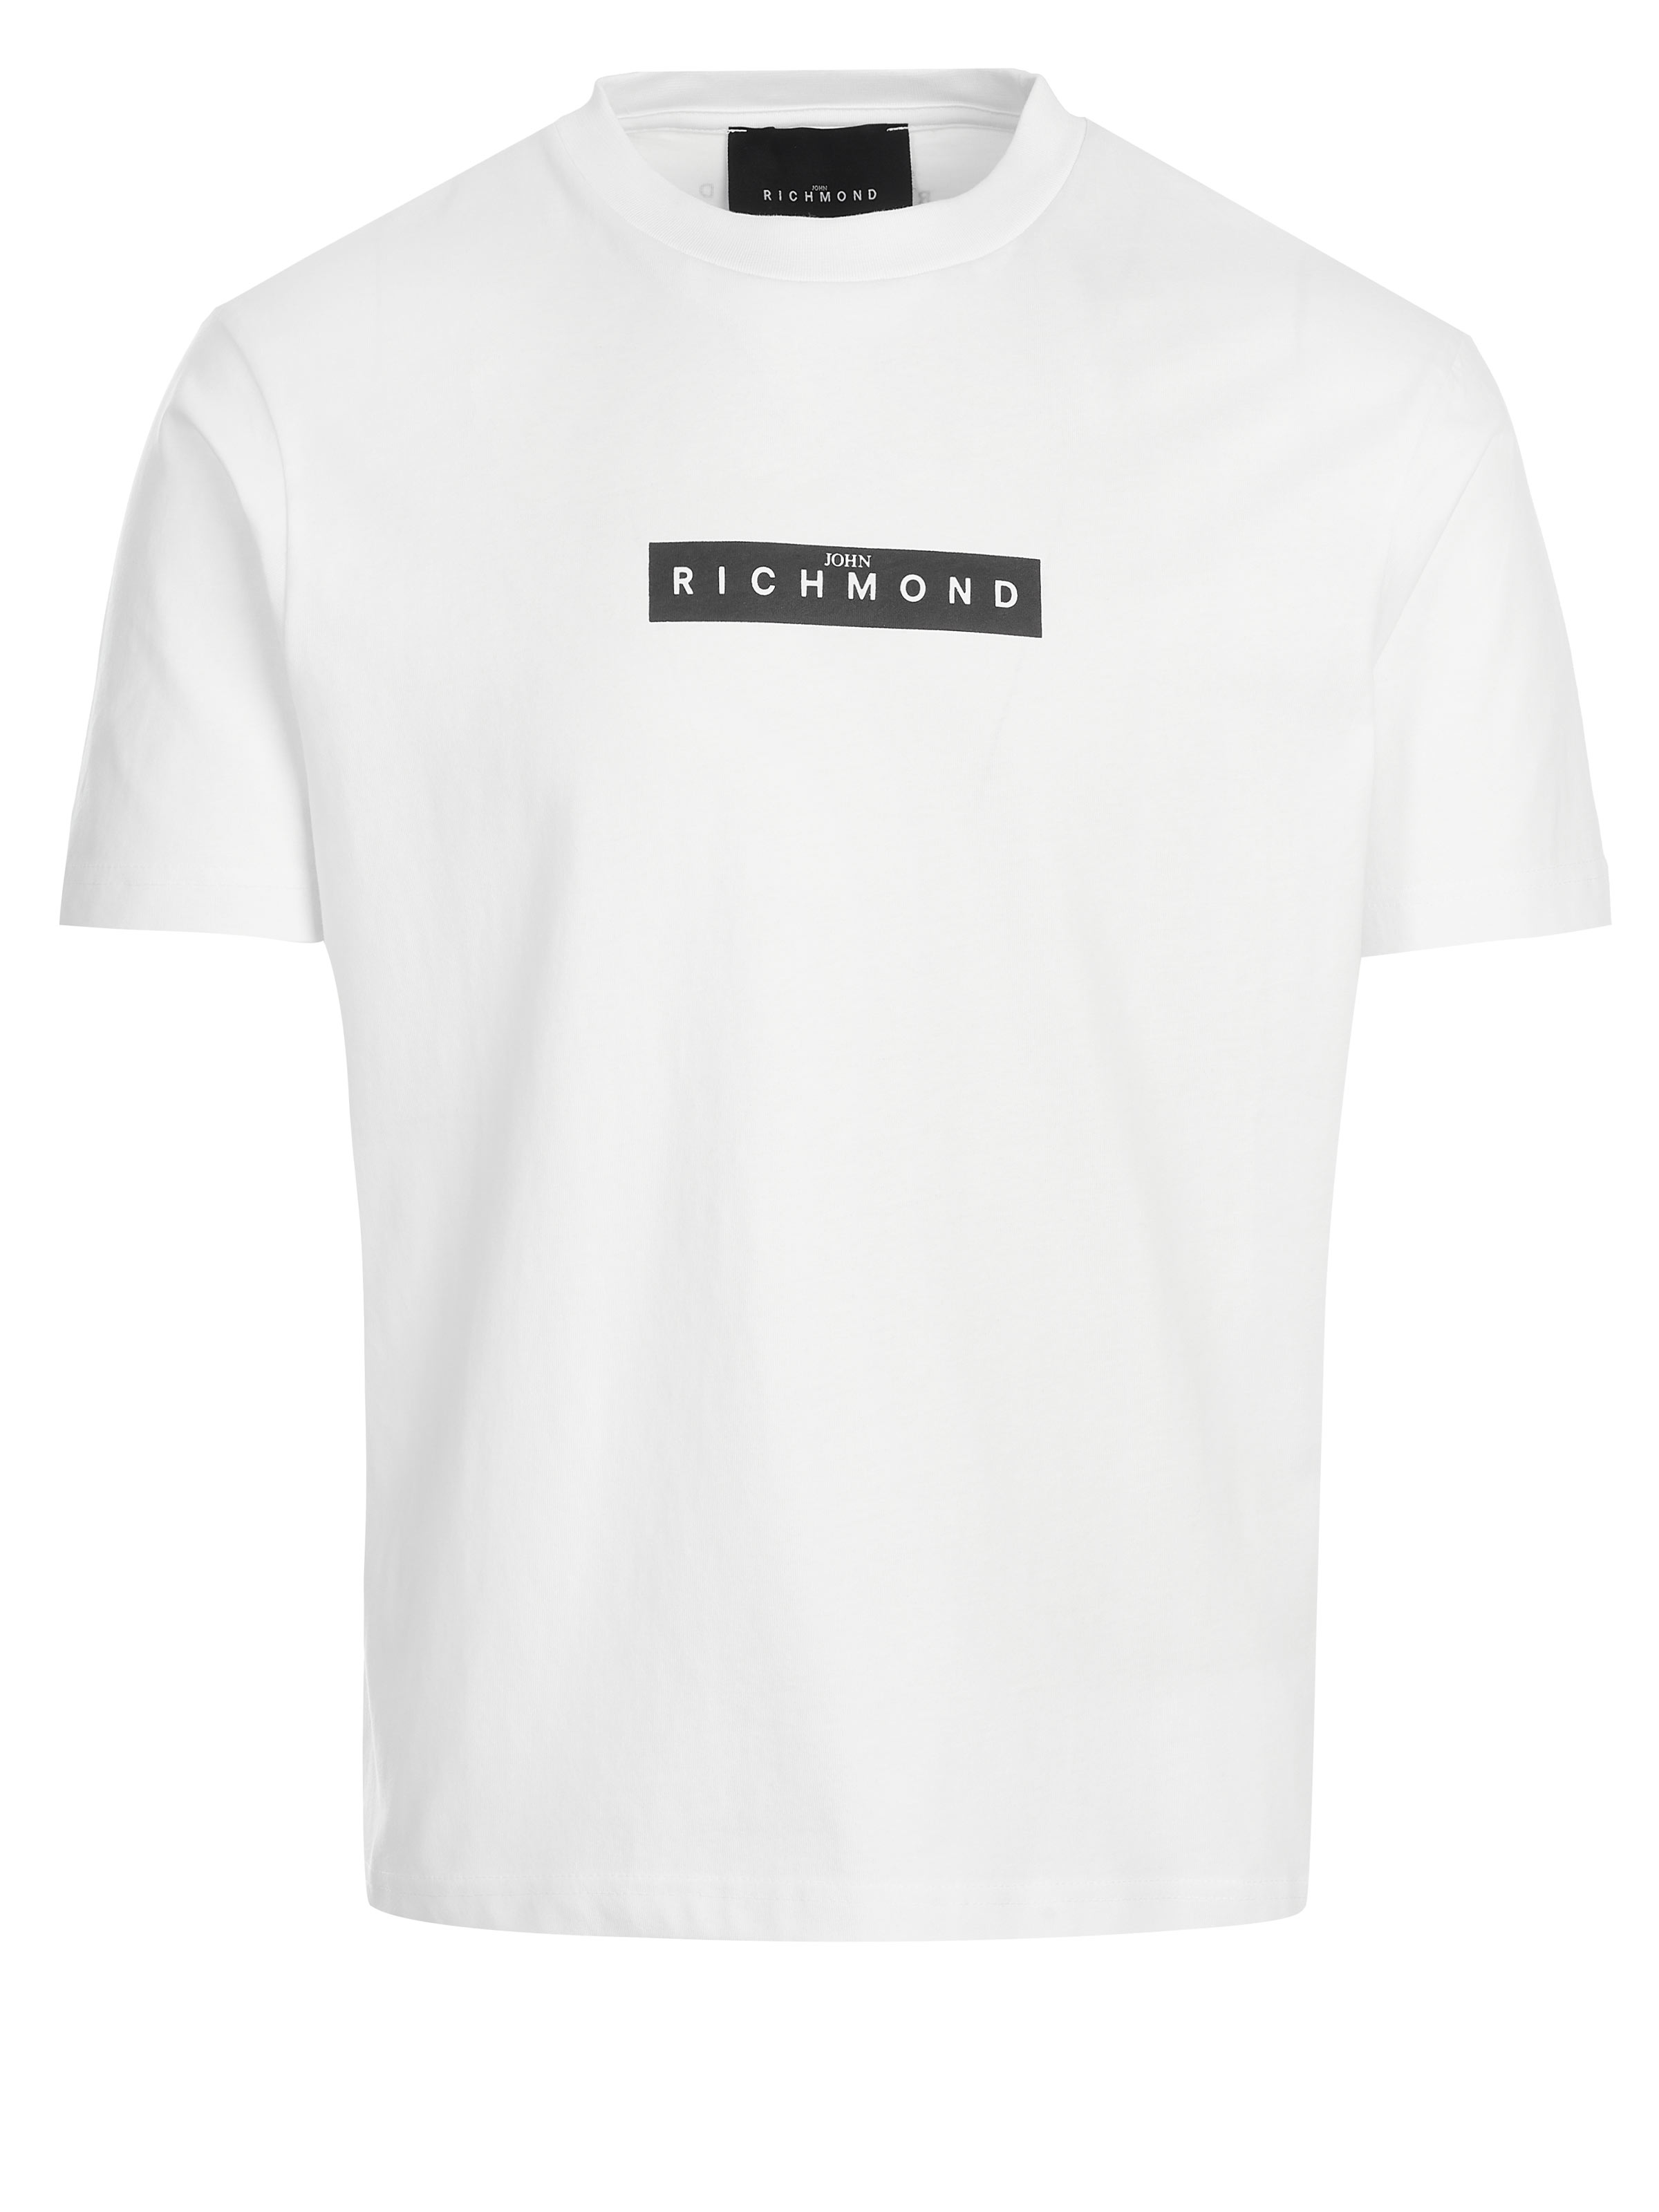 SALEHOT】 ジョン リッチモンド メンズ Tシャツ トップス T-shirt White：ReVida 店